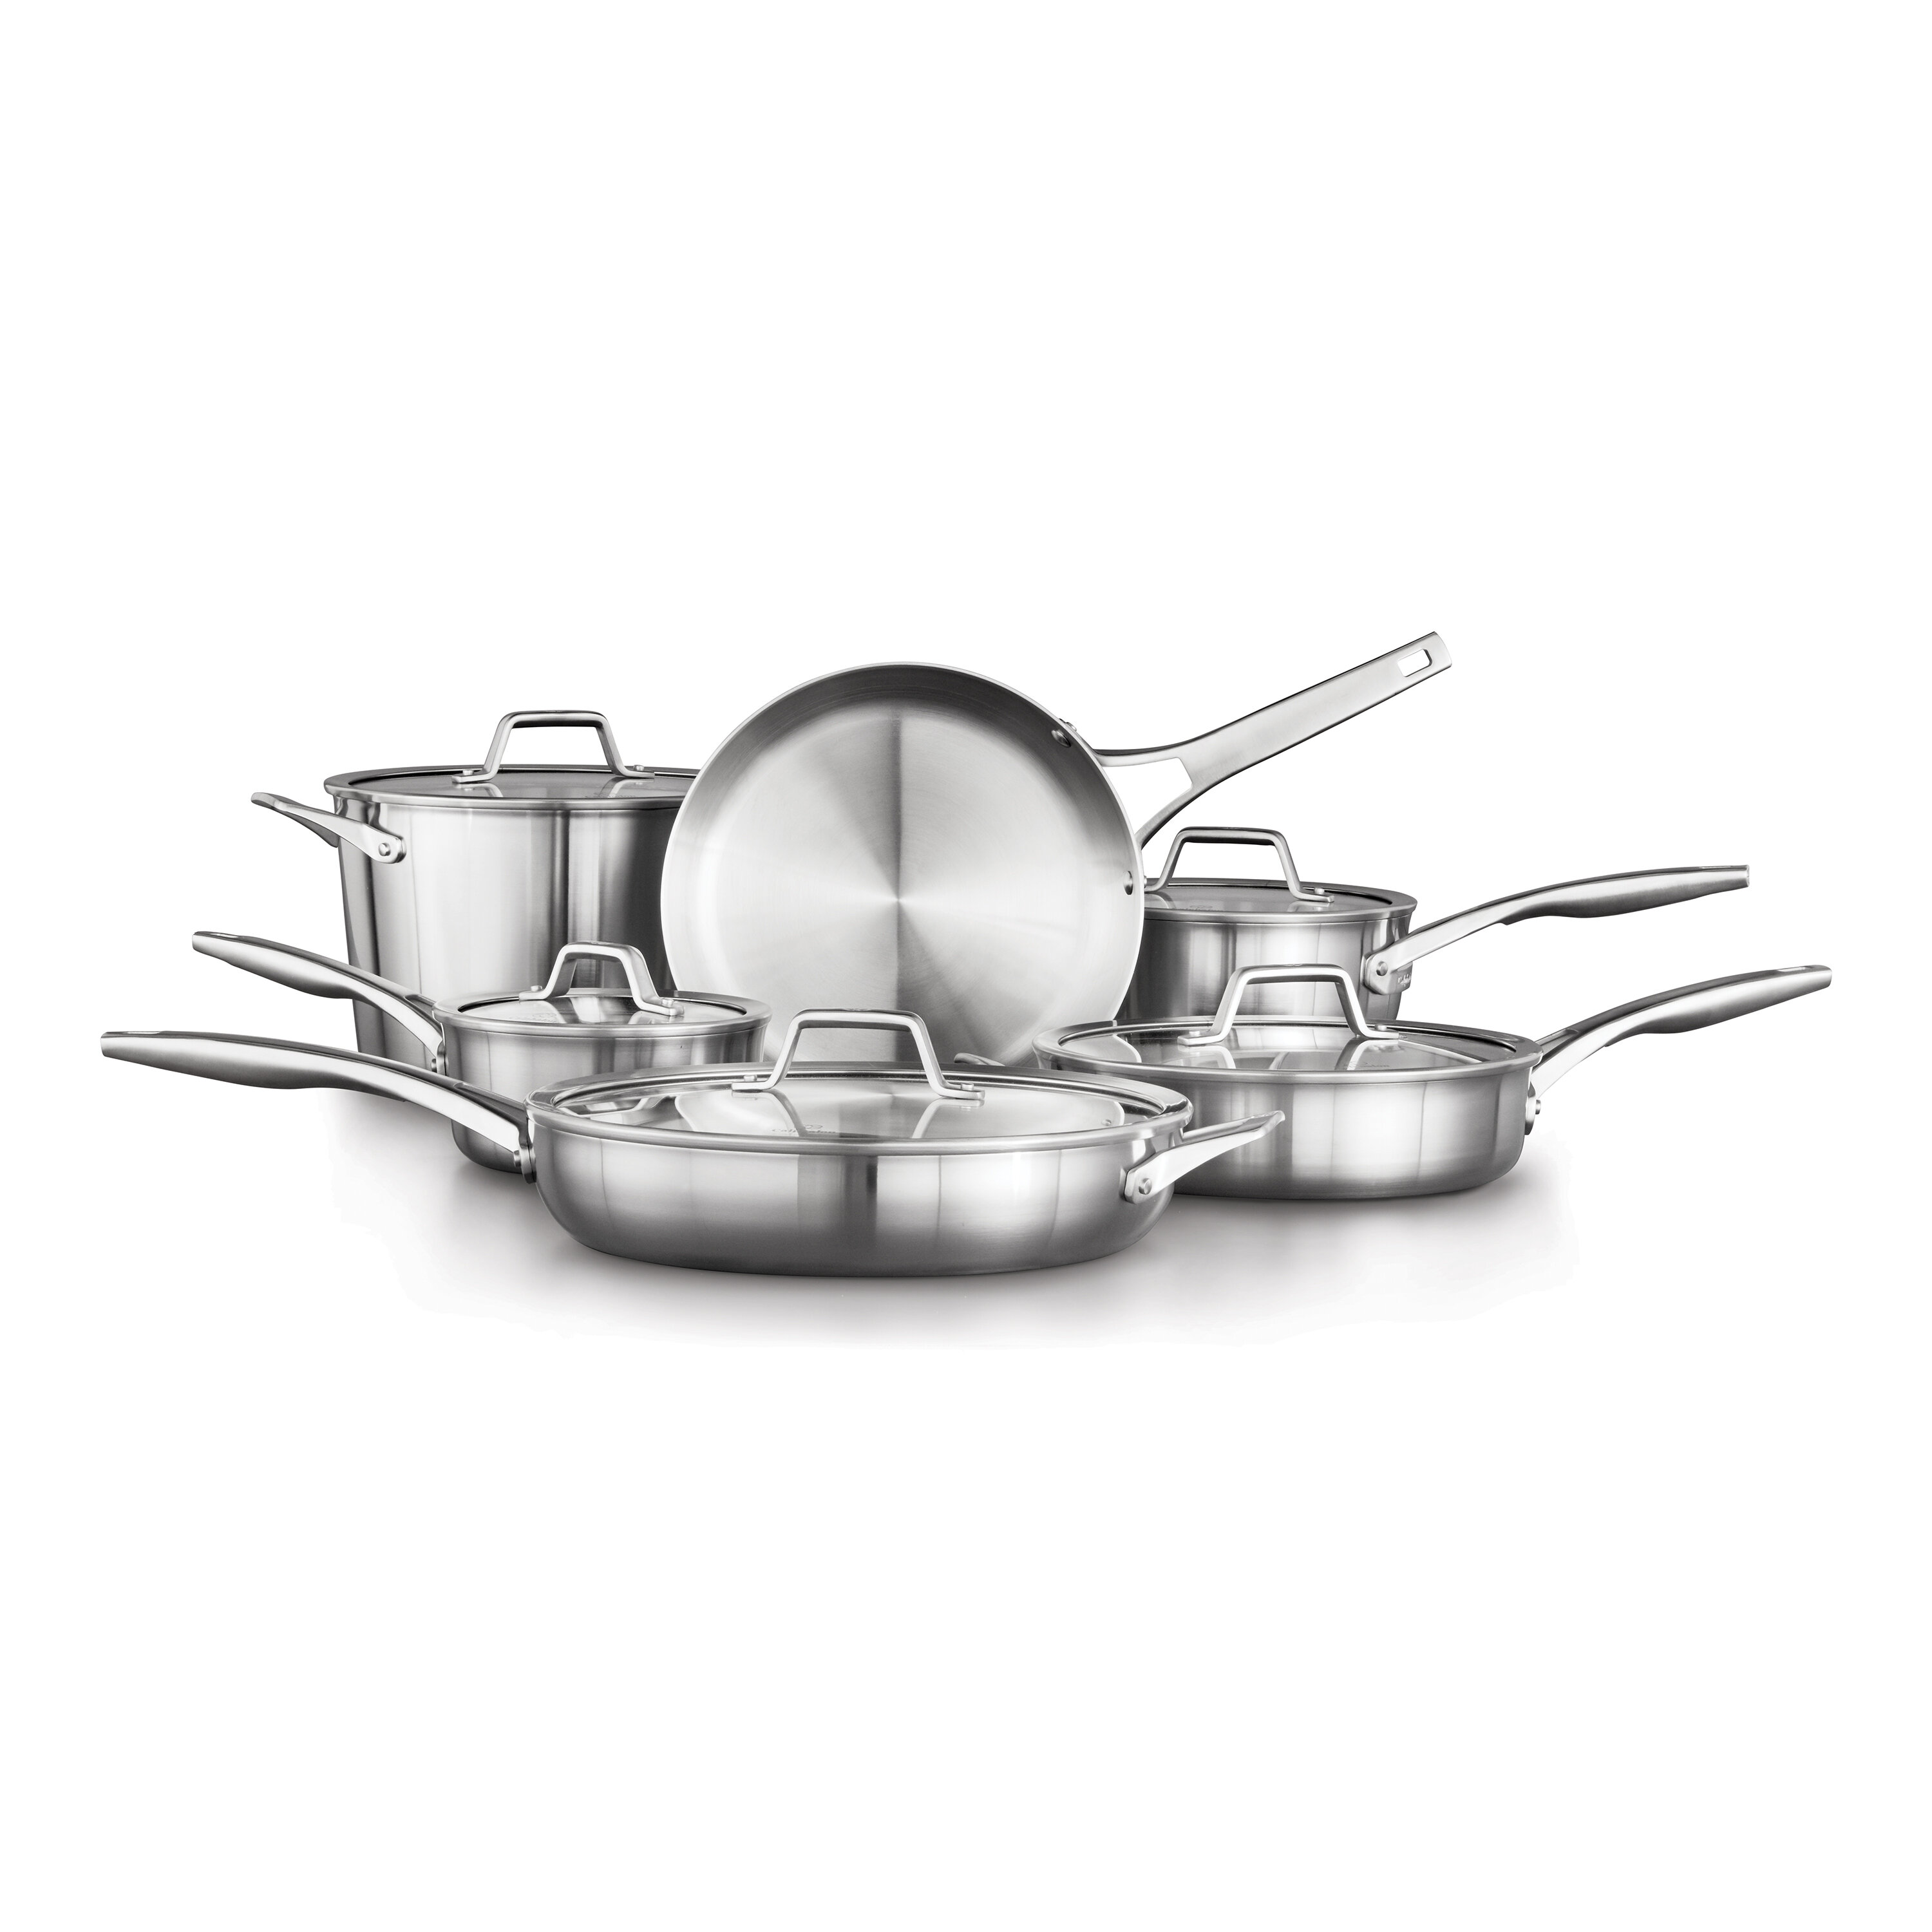 https://assets.wfcdn.com/im/36609332/compr-r85/1204/120457407/calphalon-premier-stainless-steel-11-piece-cookware-set.jpg